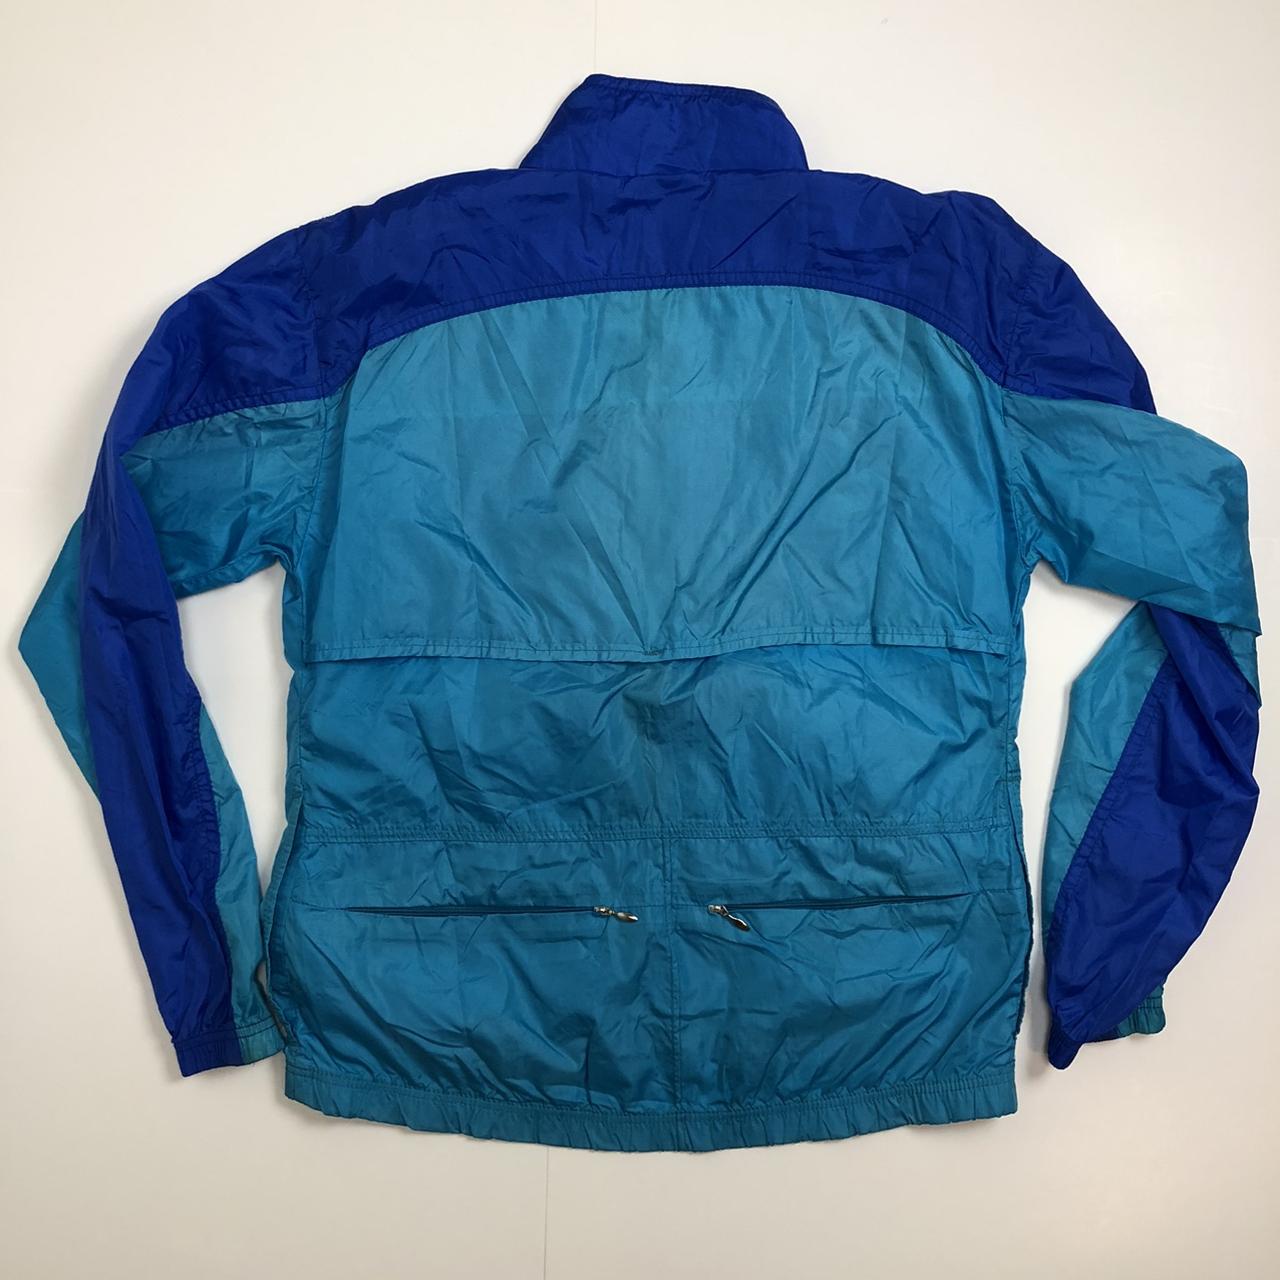 Bellwether Vintage Jacket - Depop